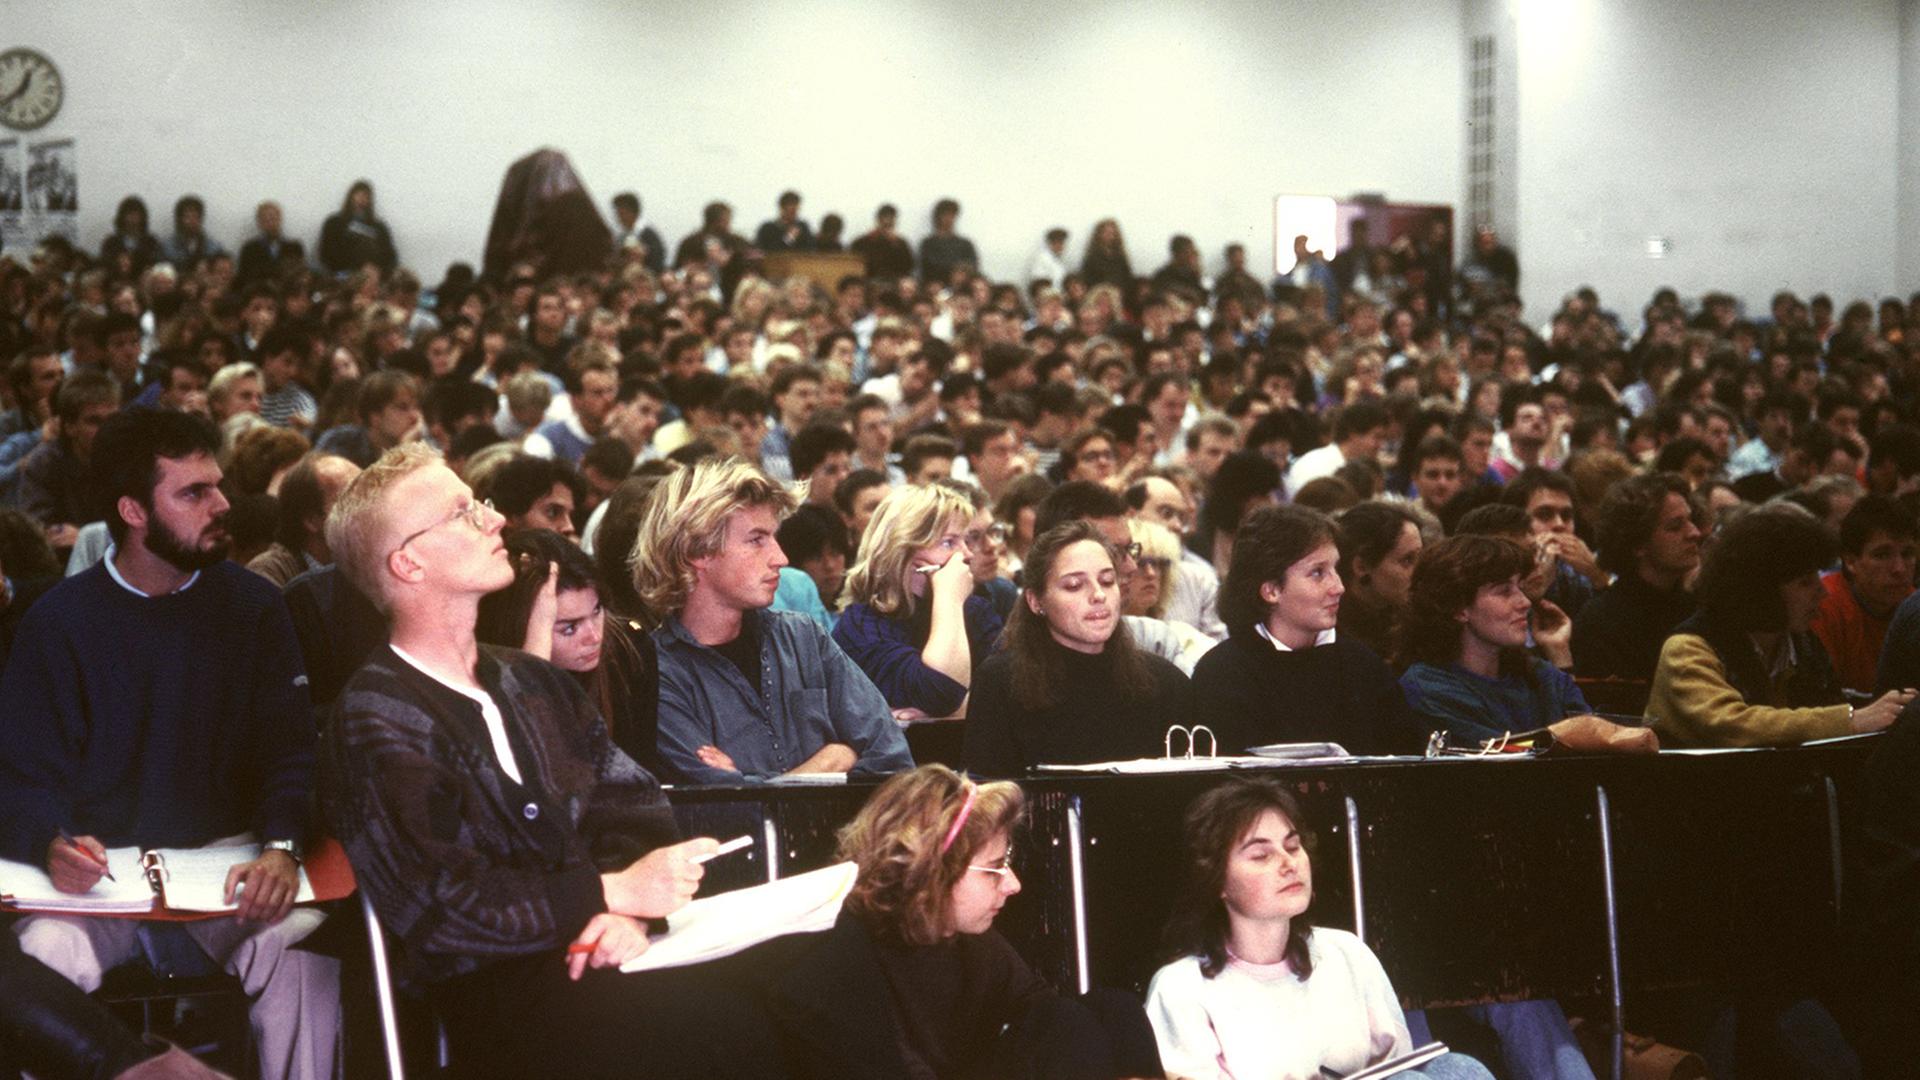 Studenten während einer Vorlesung in einem überfüllten Hörsaal der Johann Wolfgang Goethe-Universität in Frankfurt am Main.